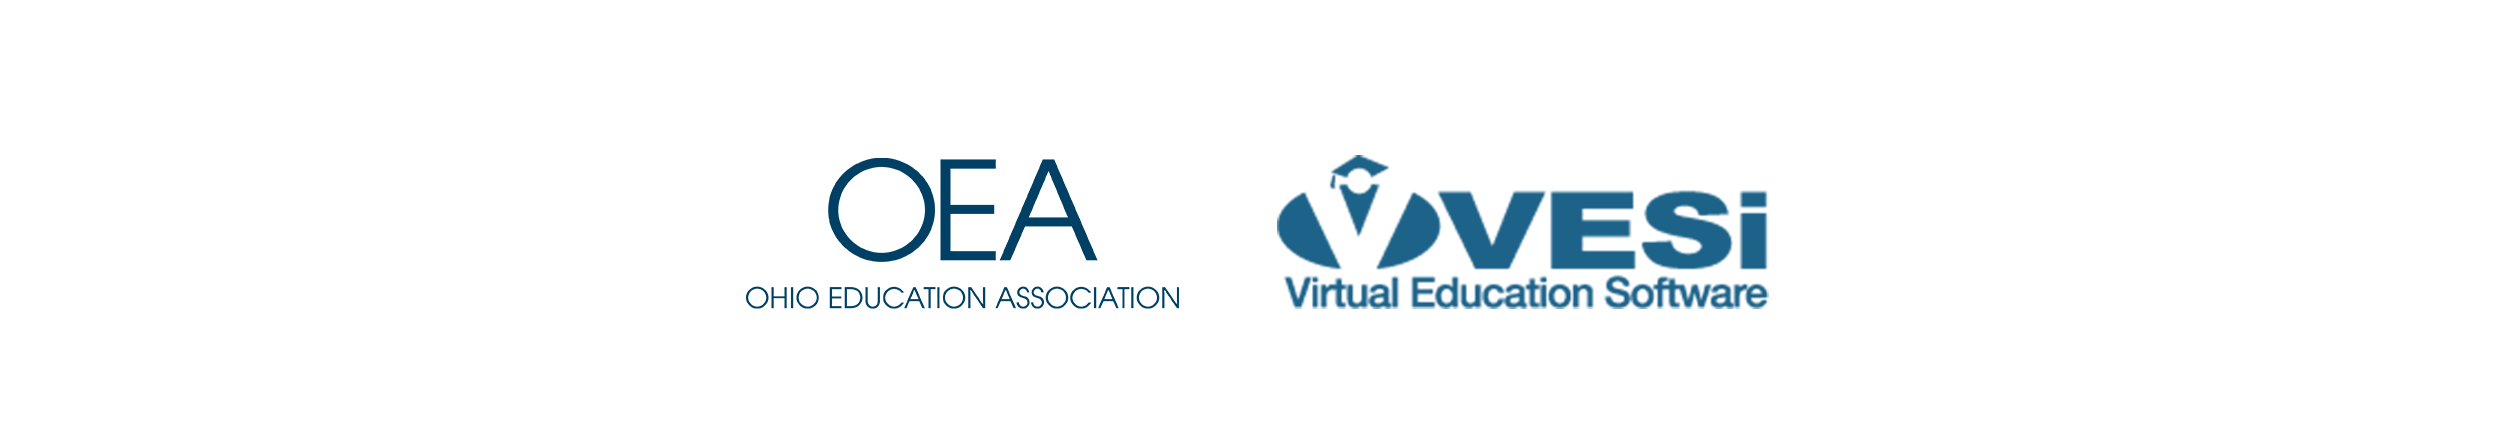 image: OEA and VESI logos